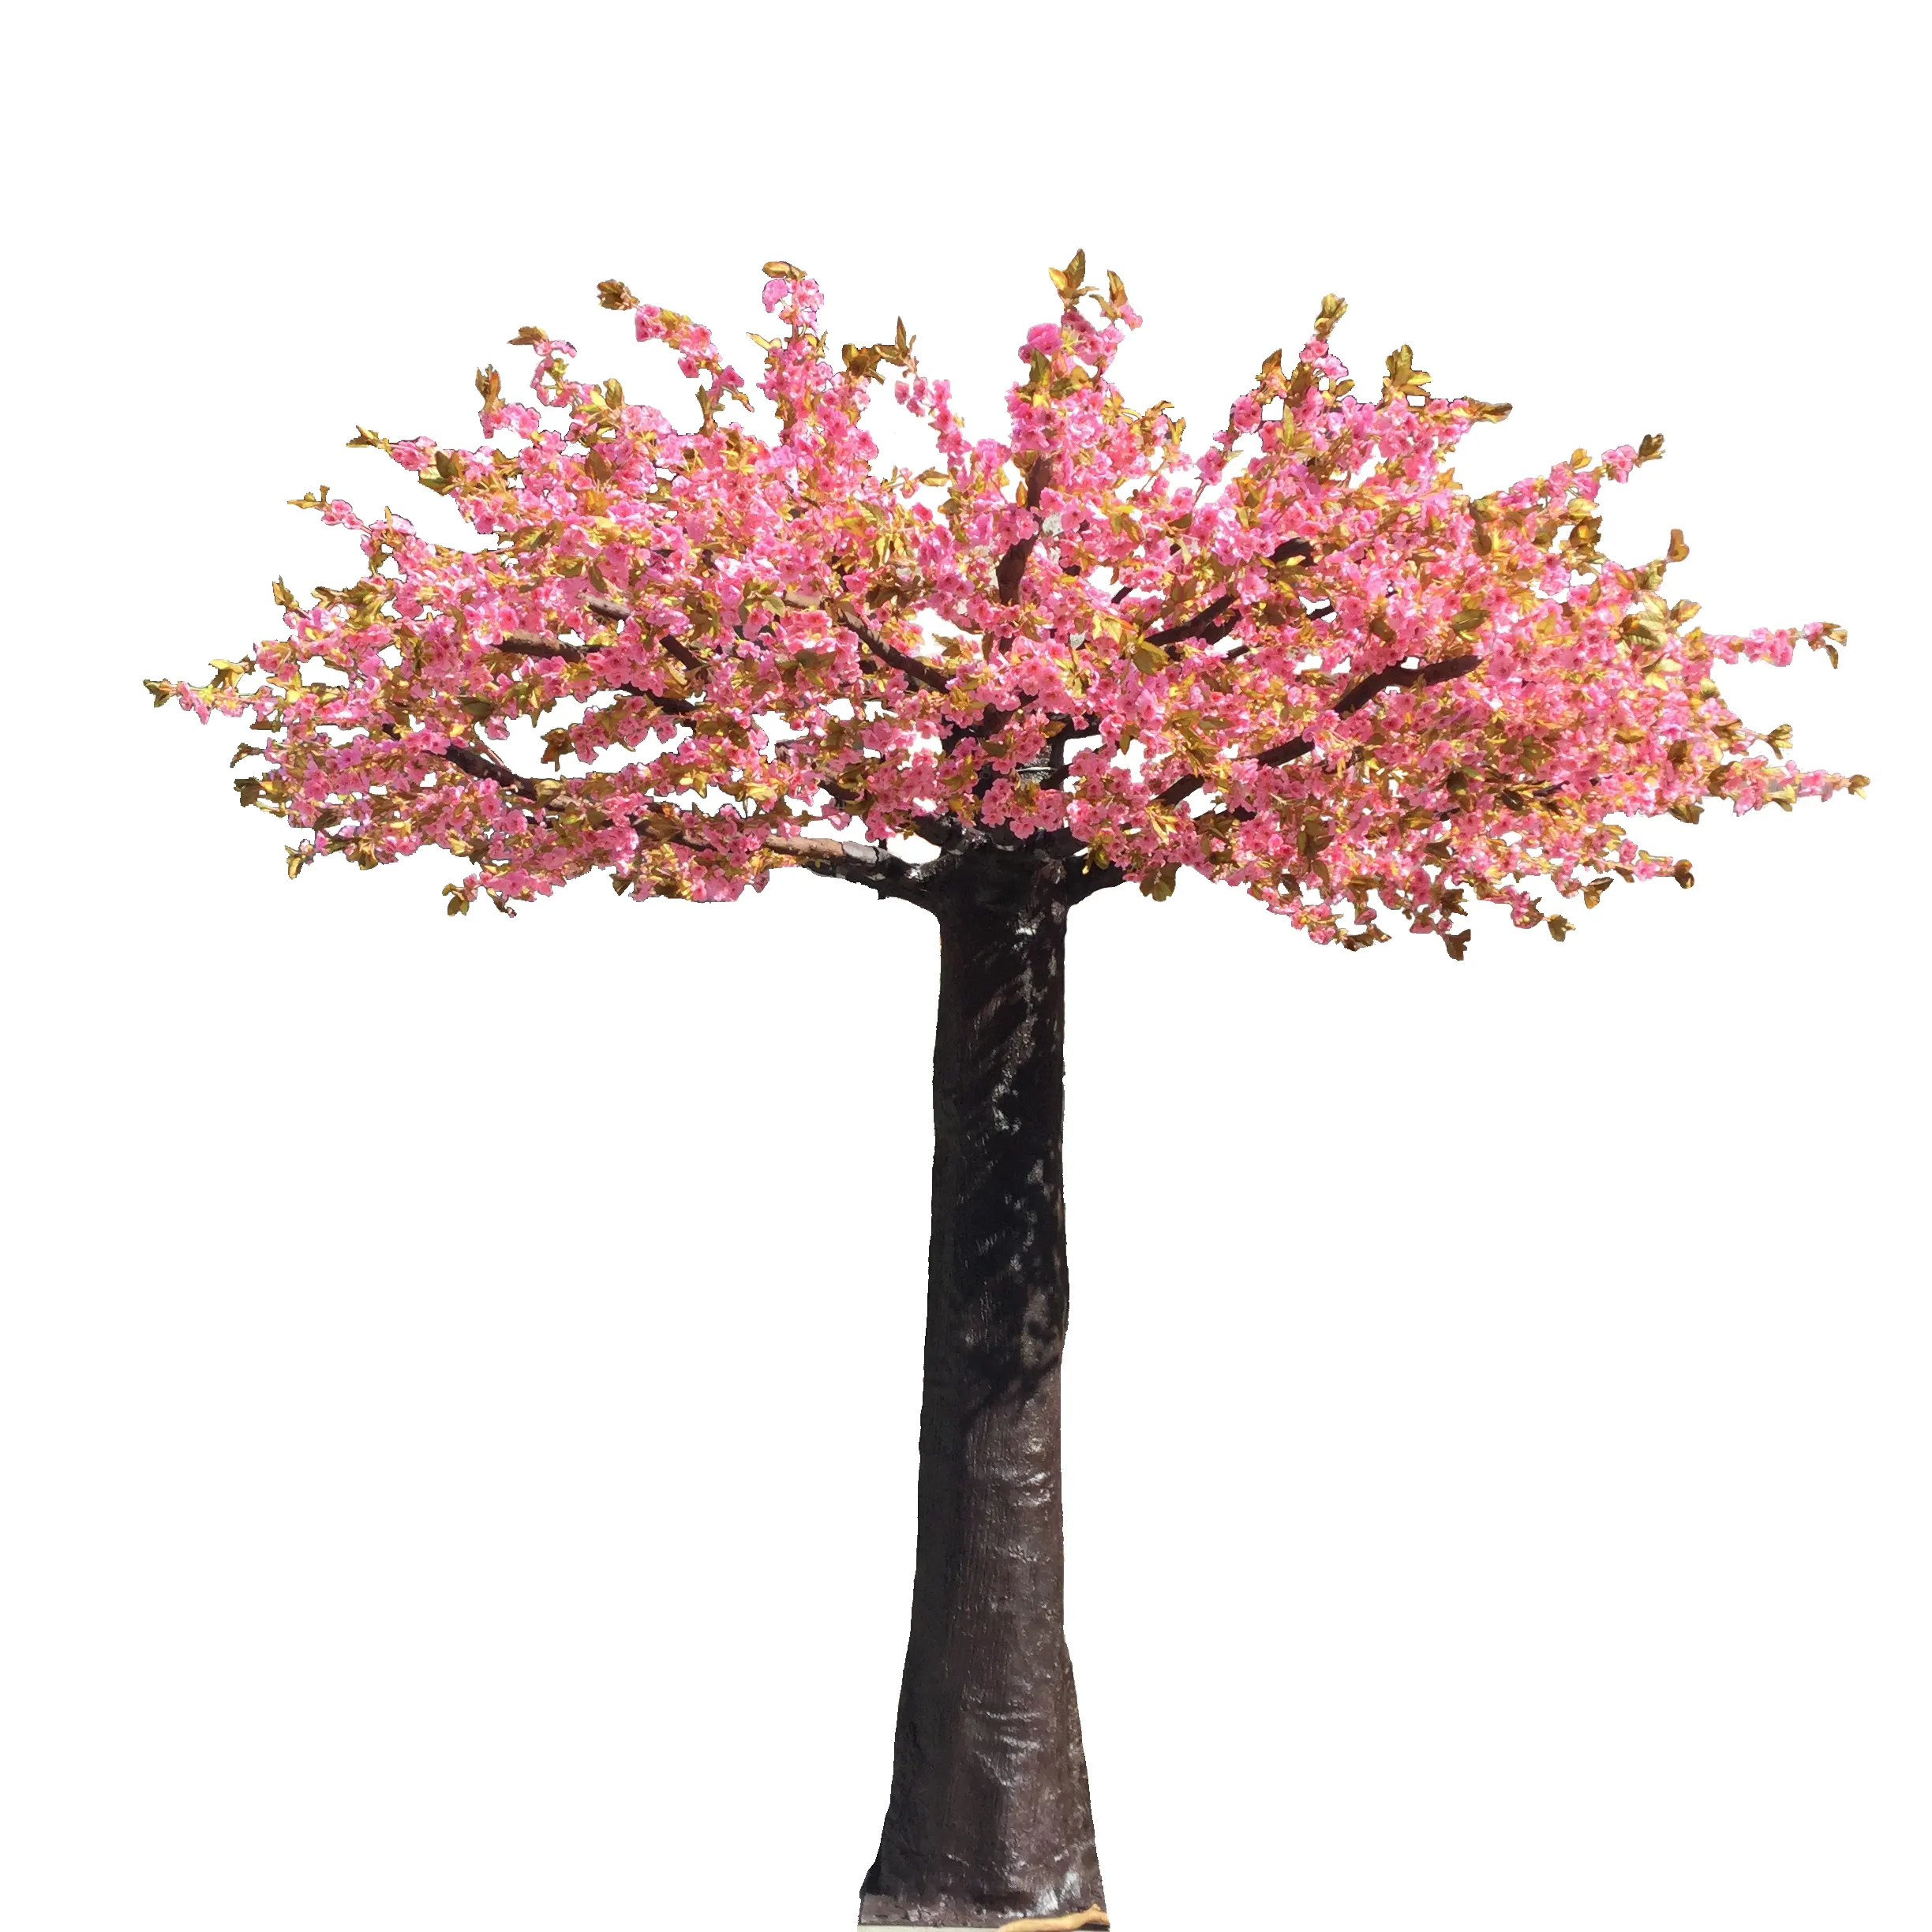 الاصطناعي الديكور الوردي زهر الكرز شجرة محور ، الحرير الزفاف شجرة الكرز في الأماكن المغلقة والهواء الطلق مشهد